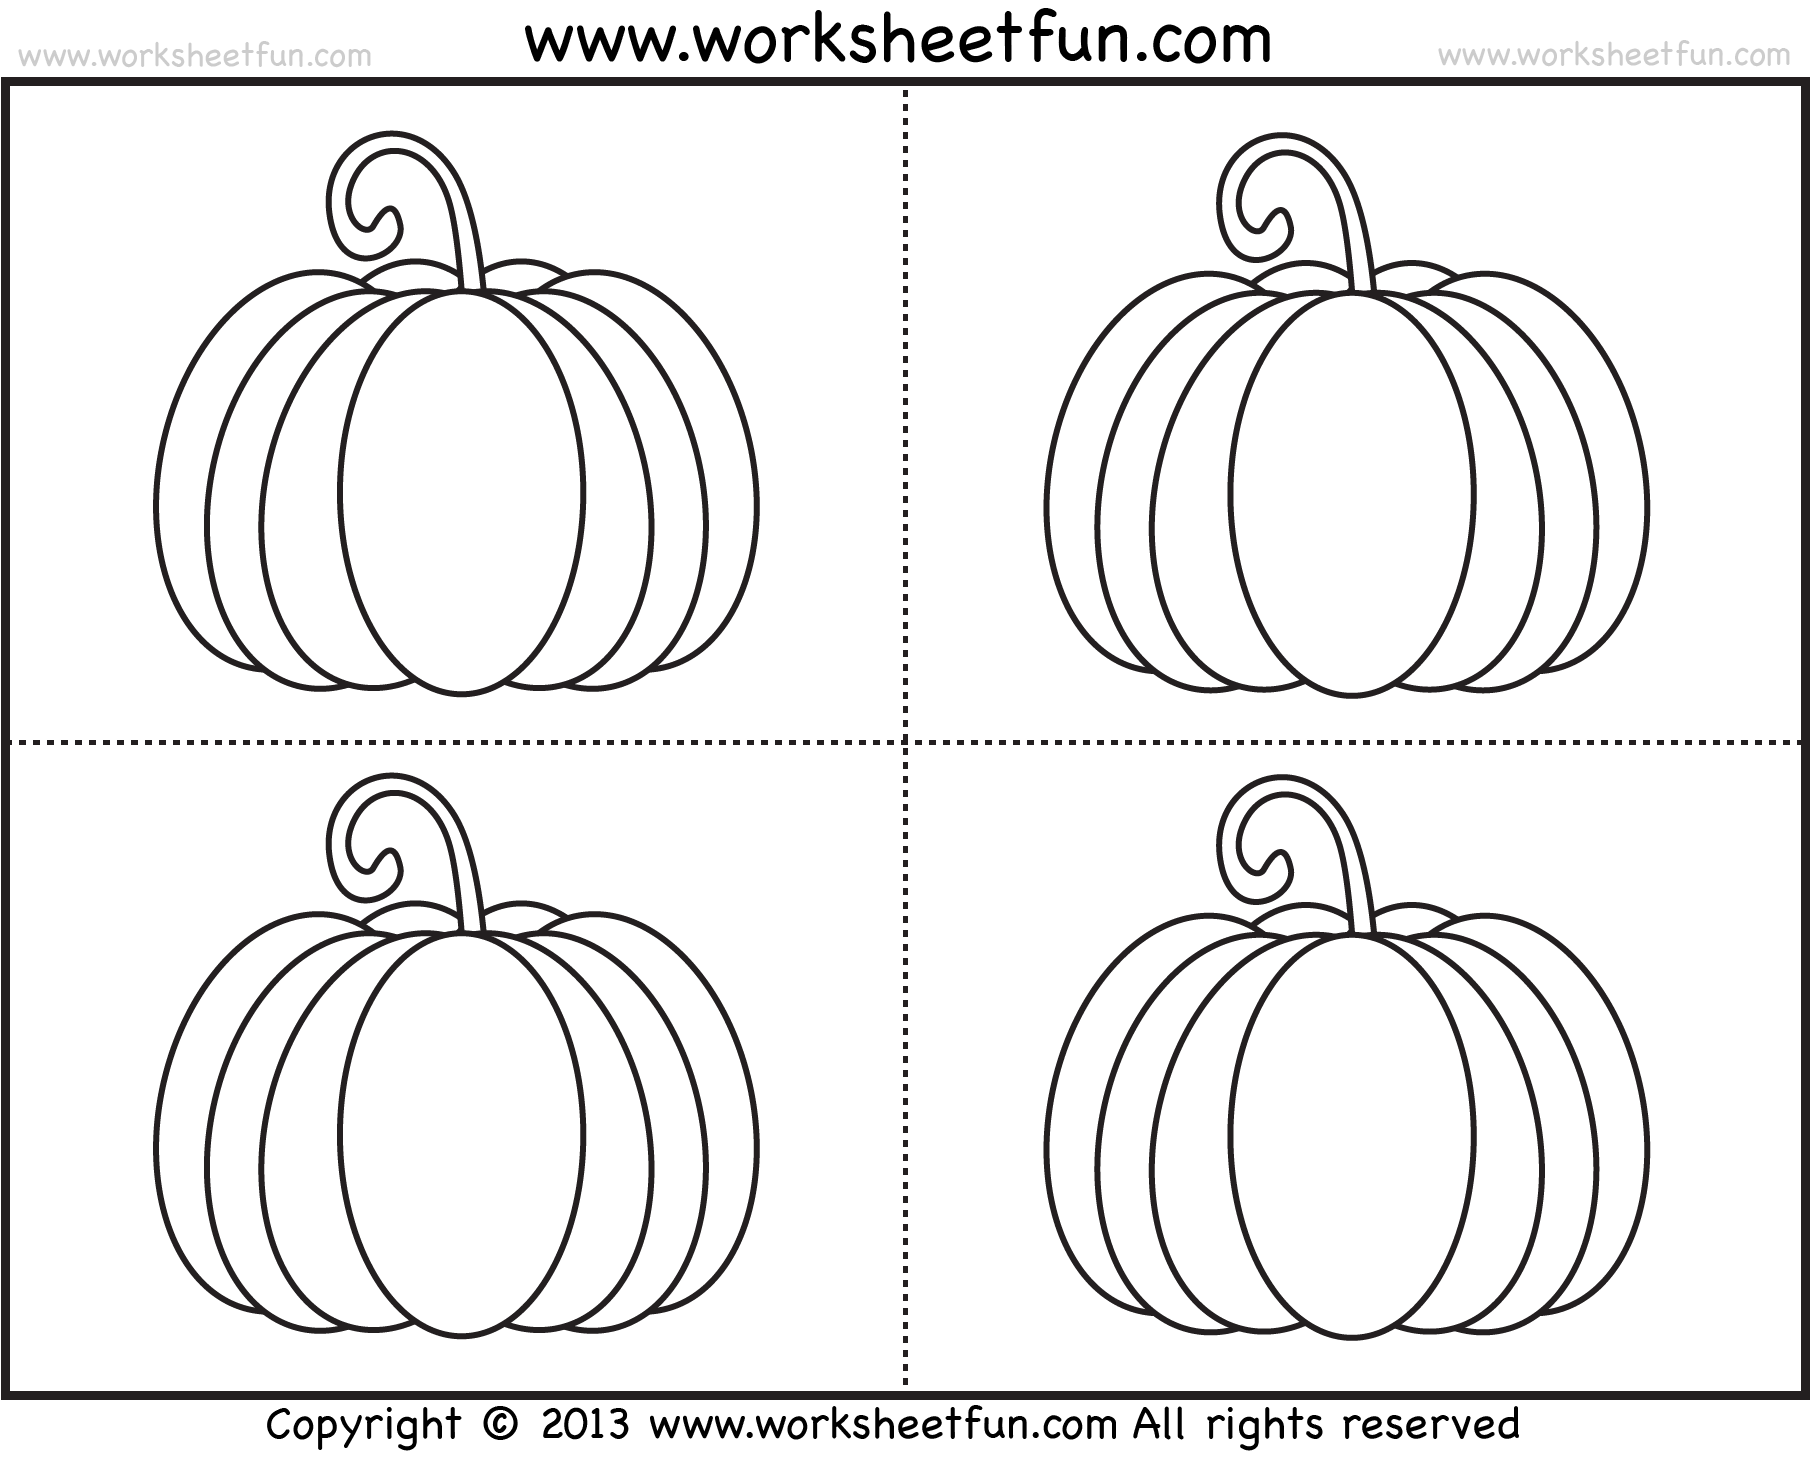 Pumpkin coloring â worksheets free printable worksheets â